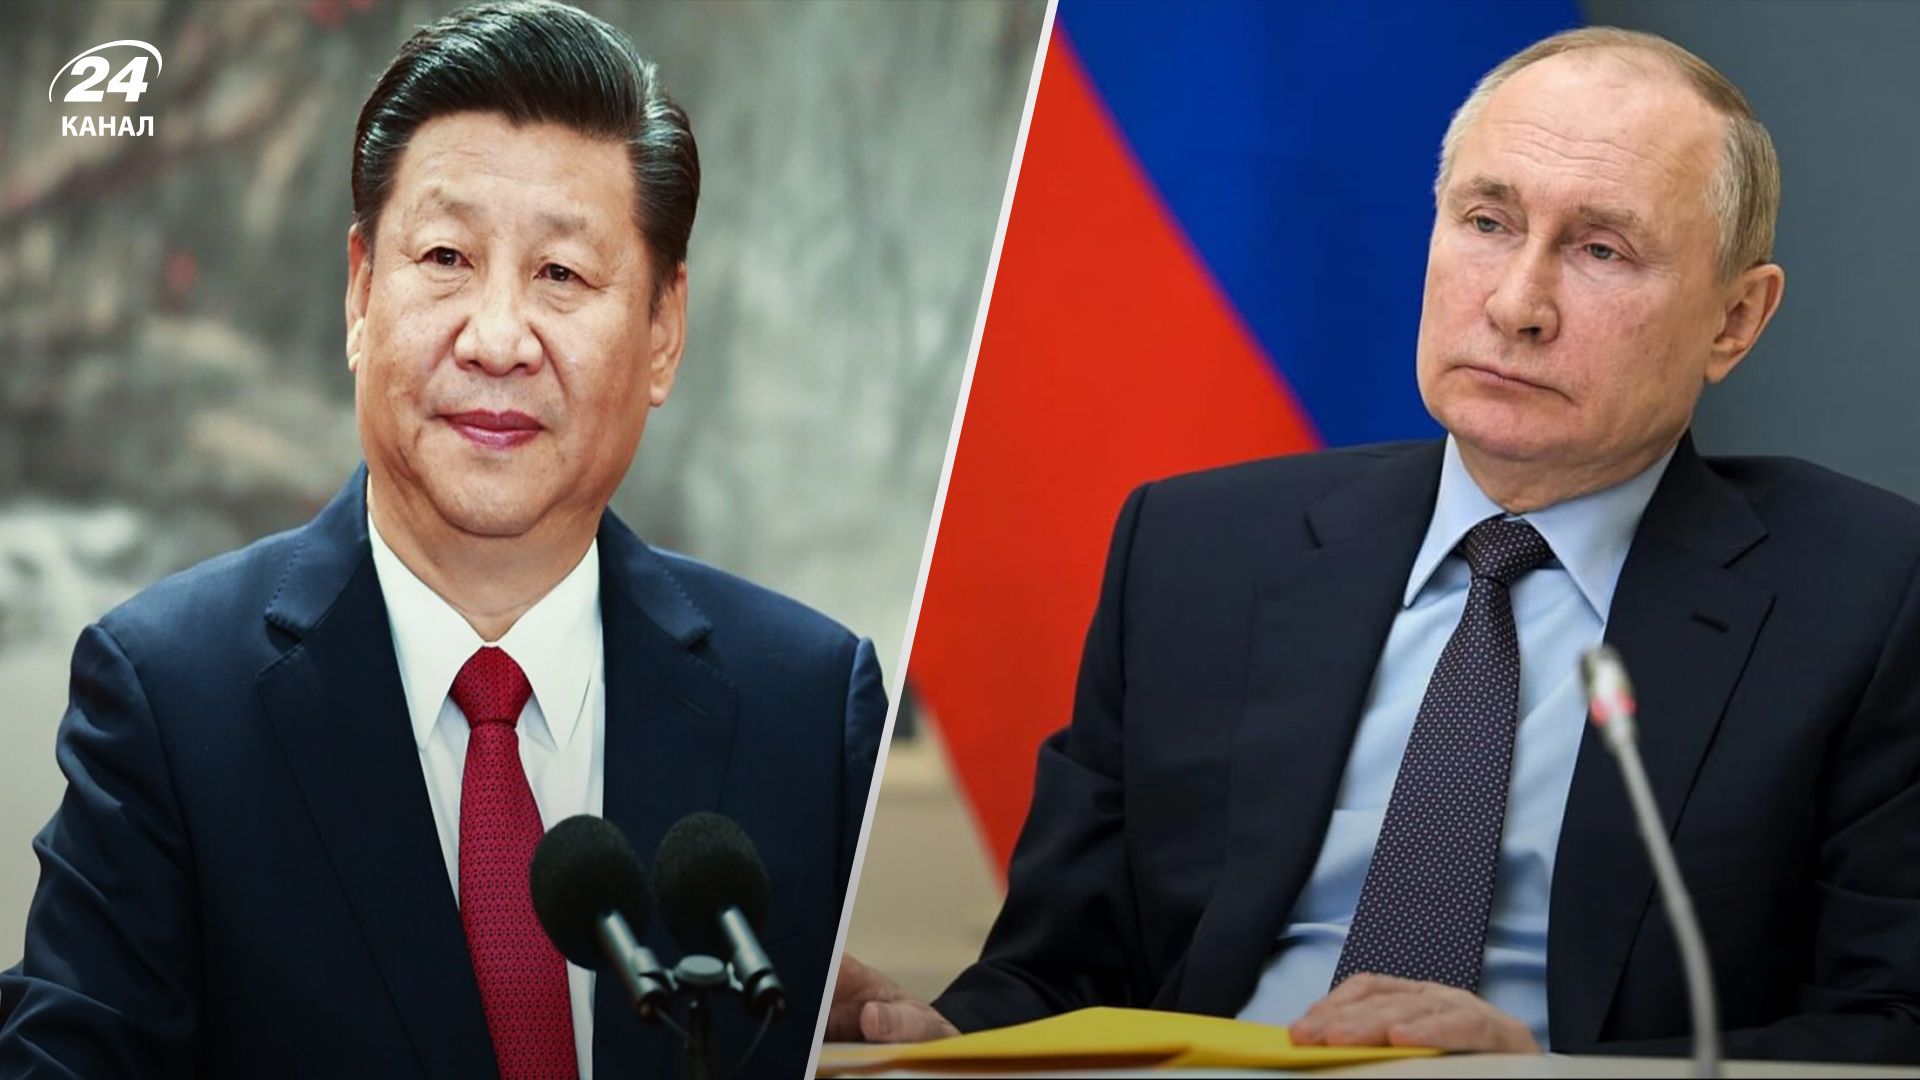 Будет ли Китай помогать России в войне - мнение оппозиционера Гудкова - 24 Канал